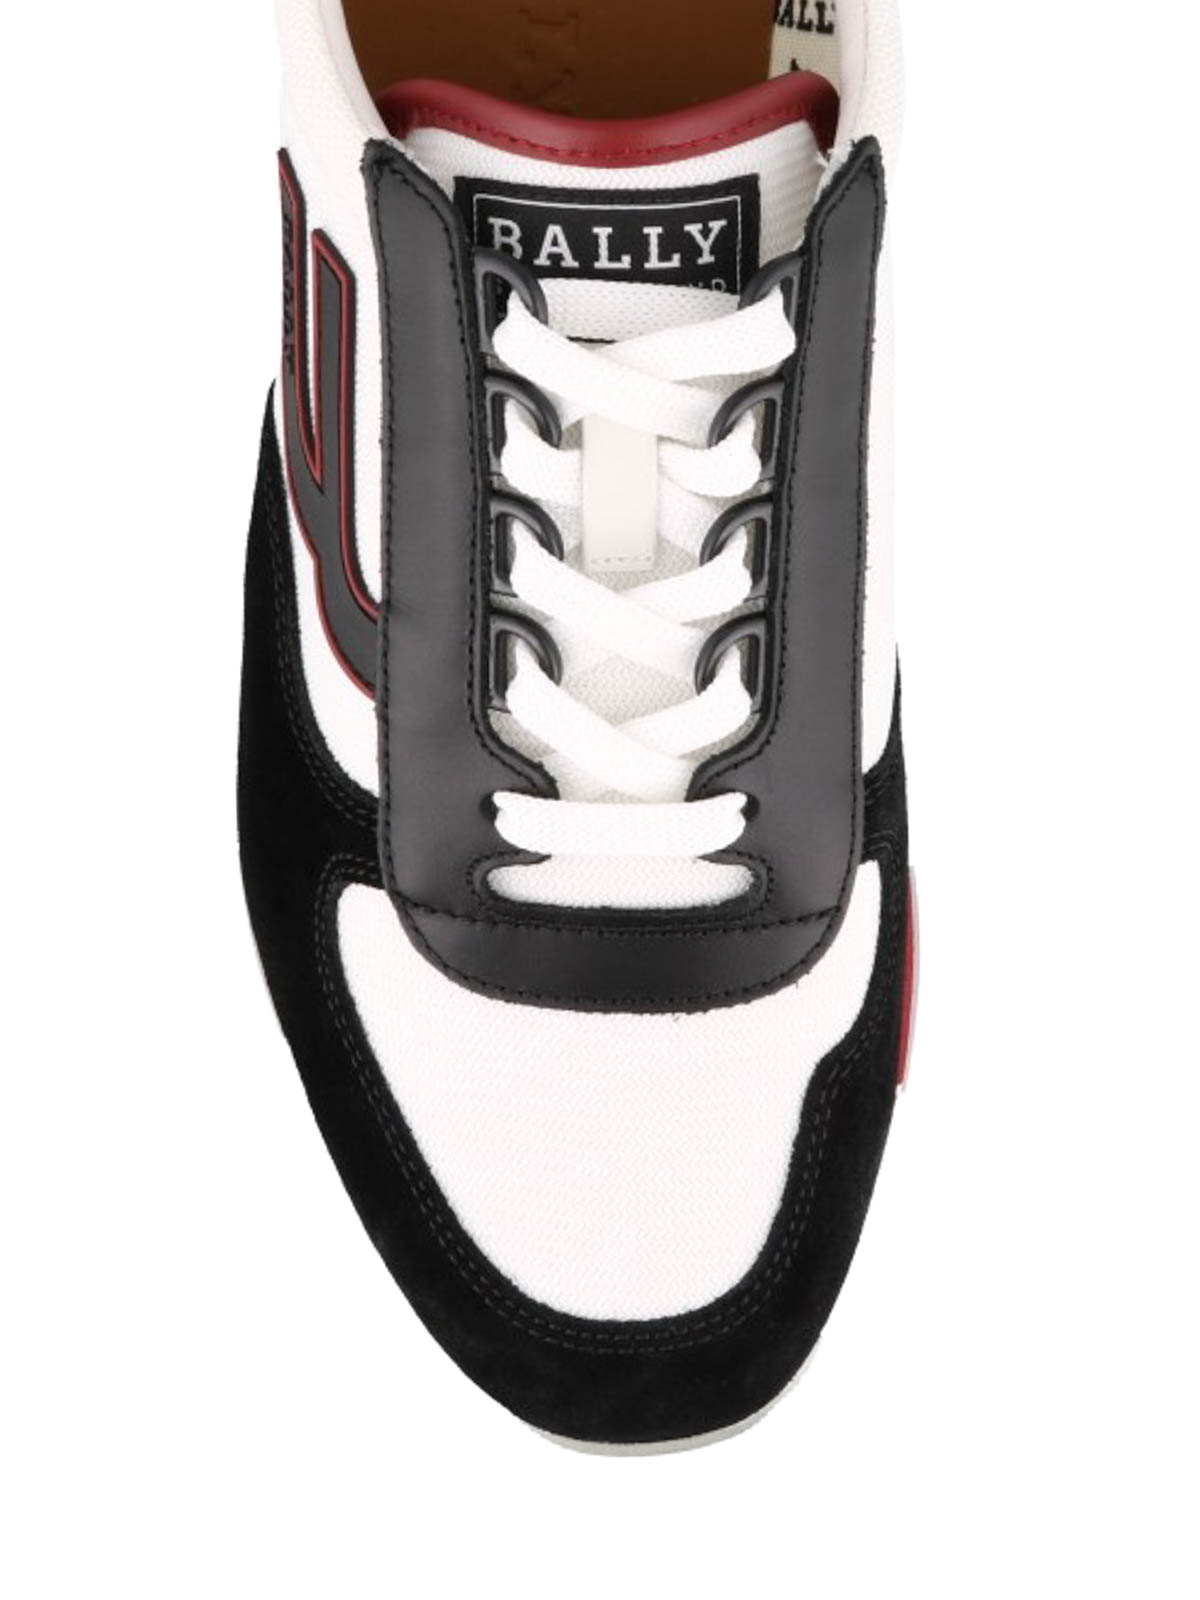 Trainers Bally - Gavino sneakers - GAVINOTMF2006225946 | iKRIX.com